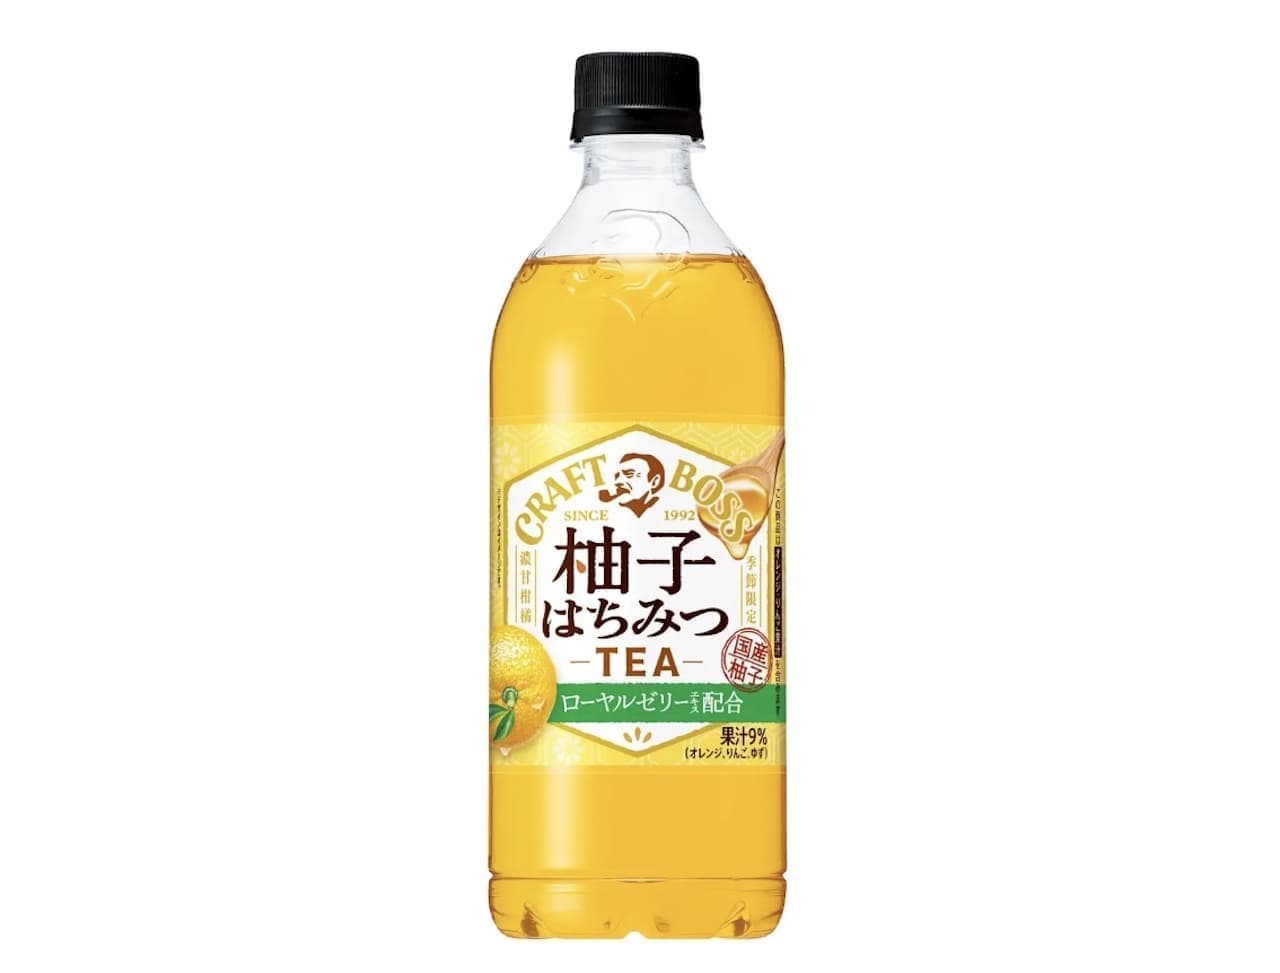 紅茶シリーズ「クラフトボス 柚子はちみつティー」